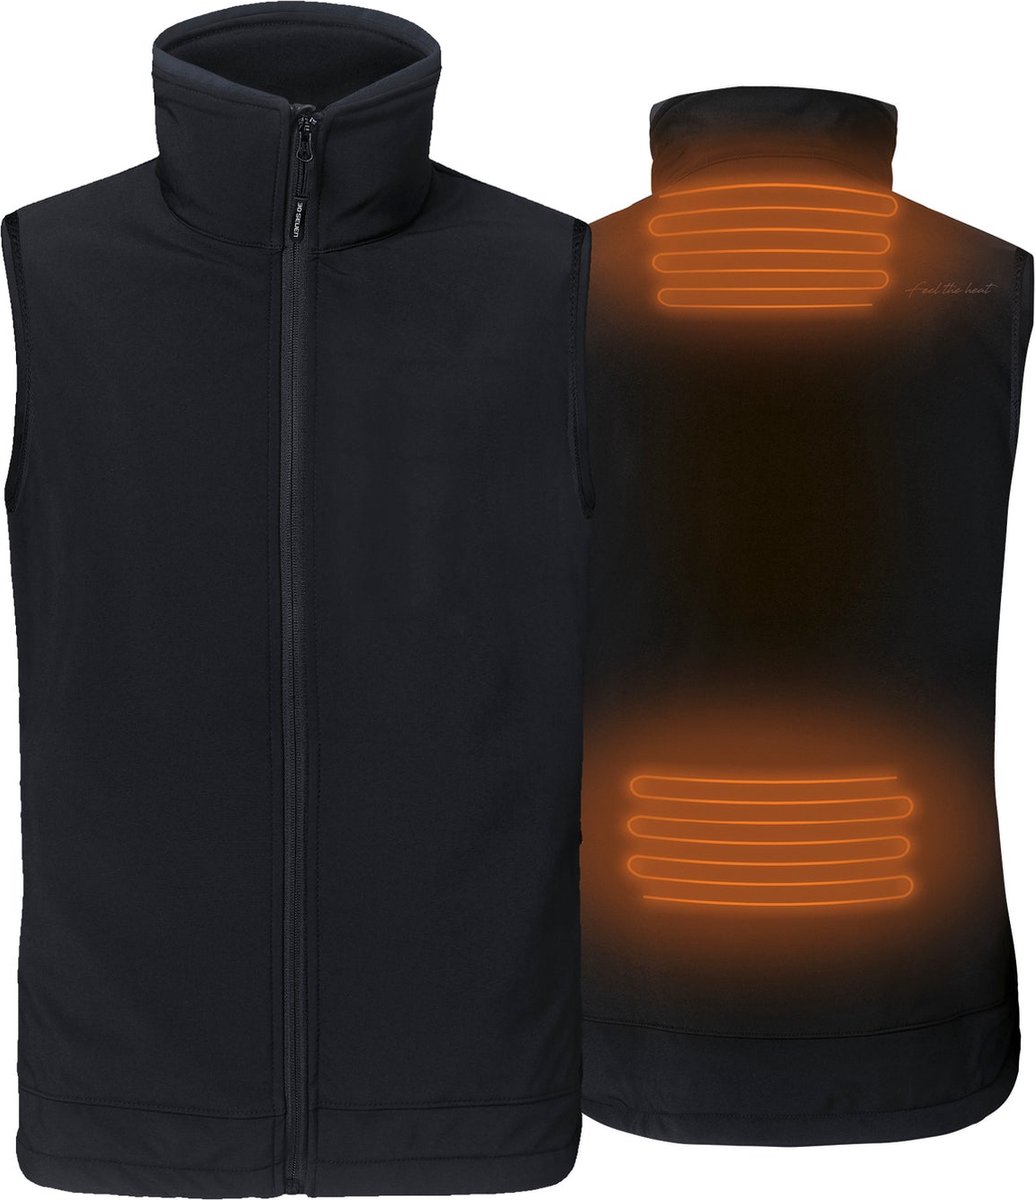 Verwarmde Softshell mouwloze jas - regular Fit voor mannen - Met extra warme fleece voering - Rapid power technologie zonder powerbank - zwart